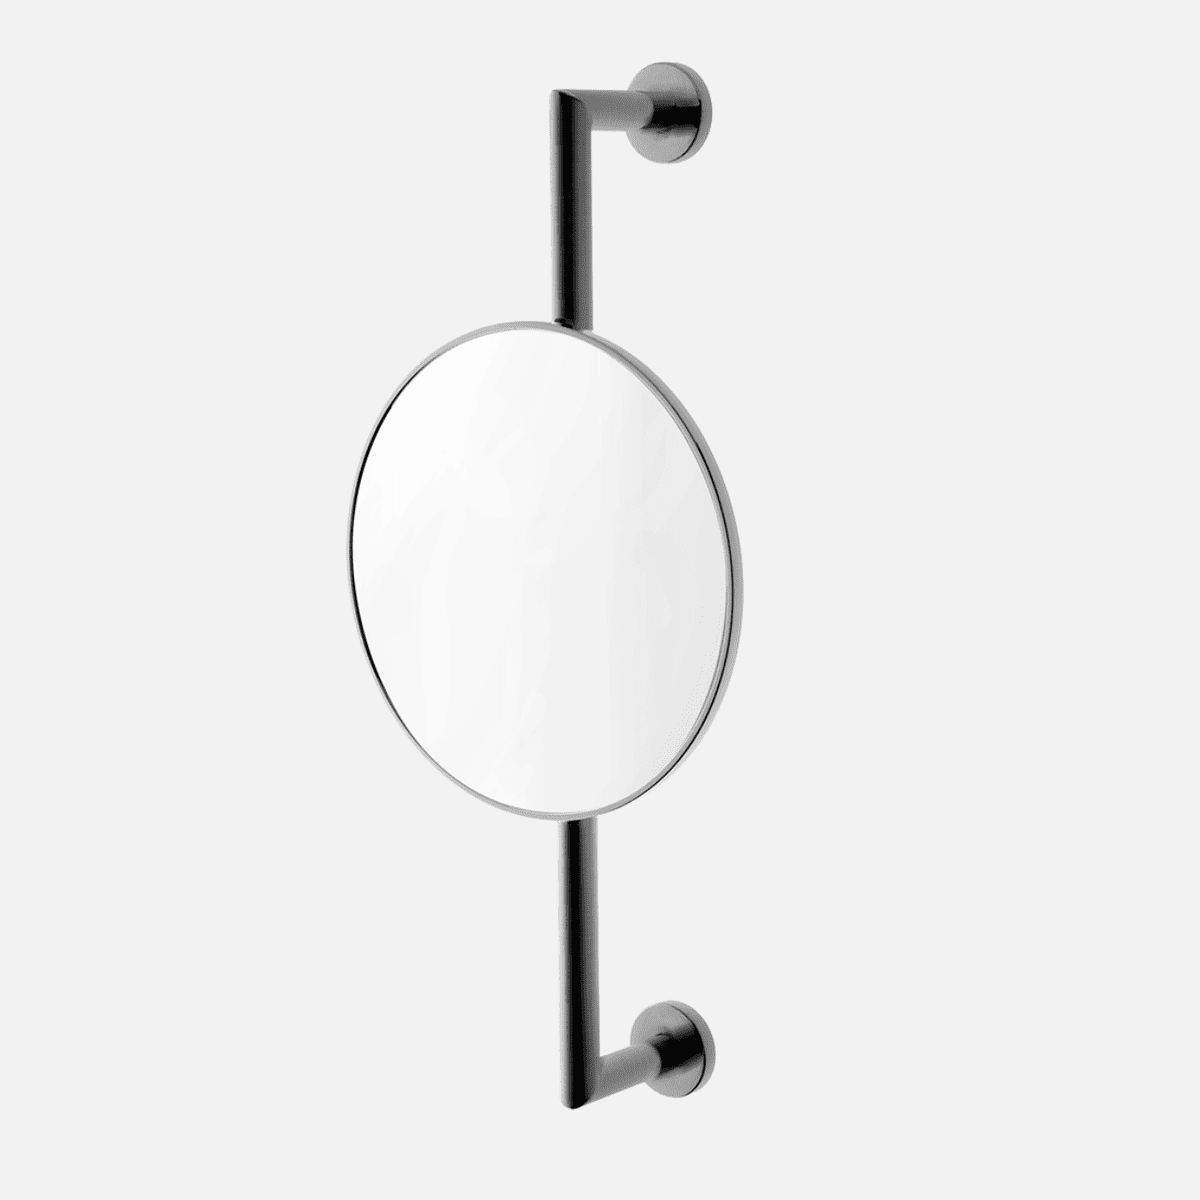 Billede af Tapwell TA816 kosmetikspejl justerbar i højde - brushed black chrome